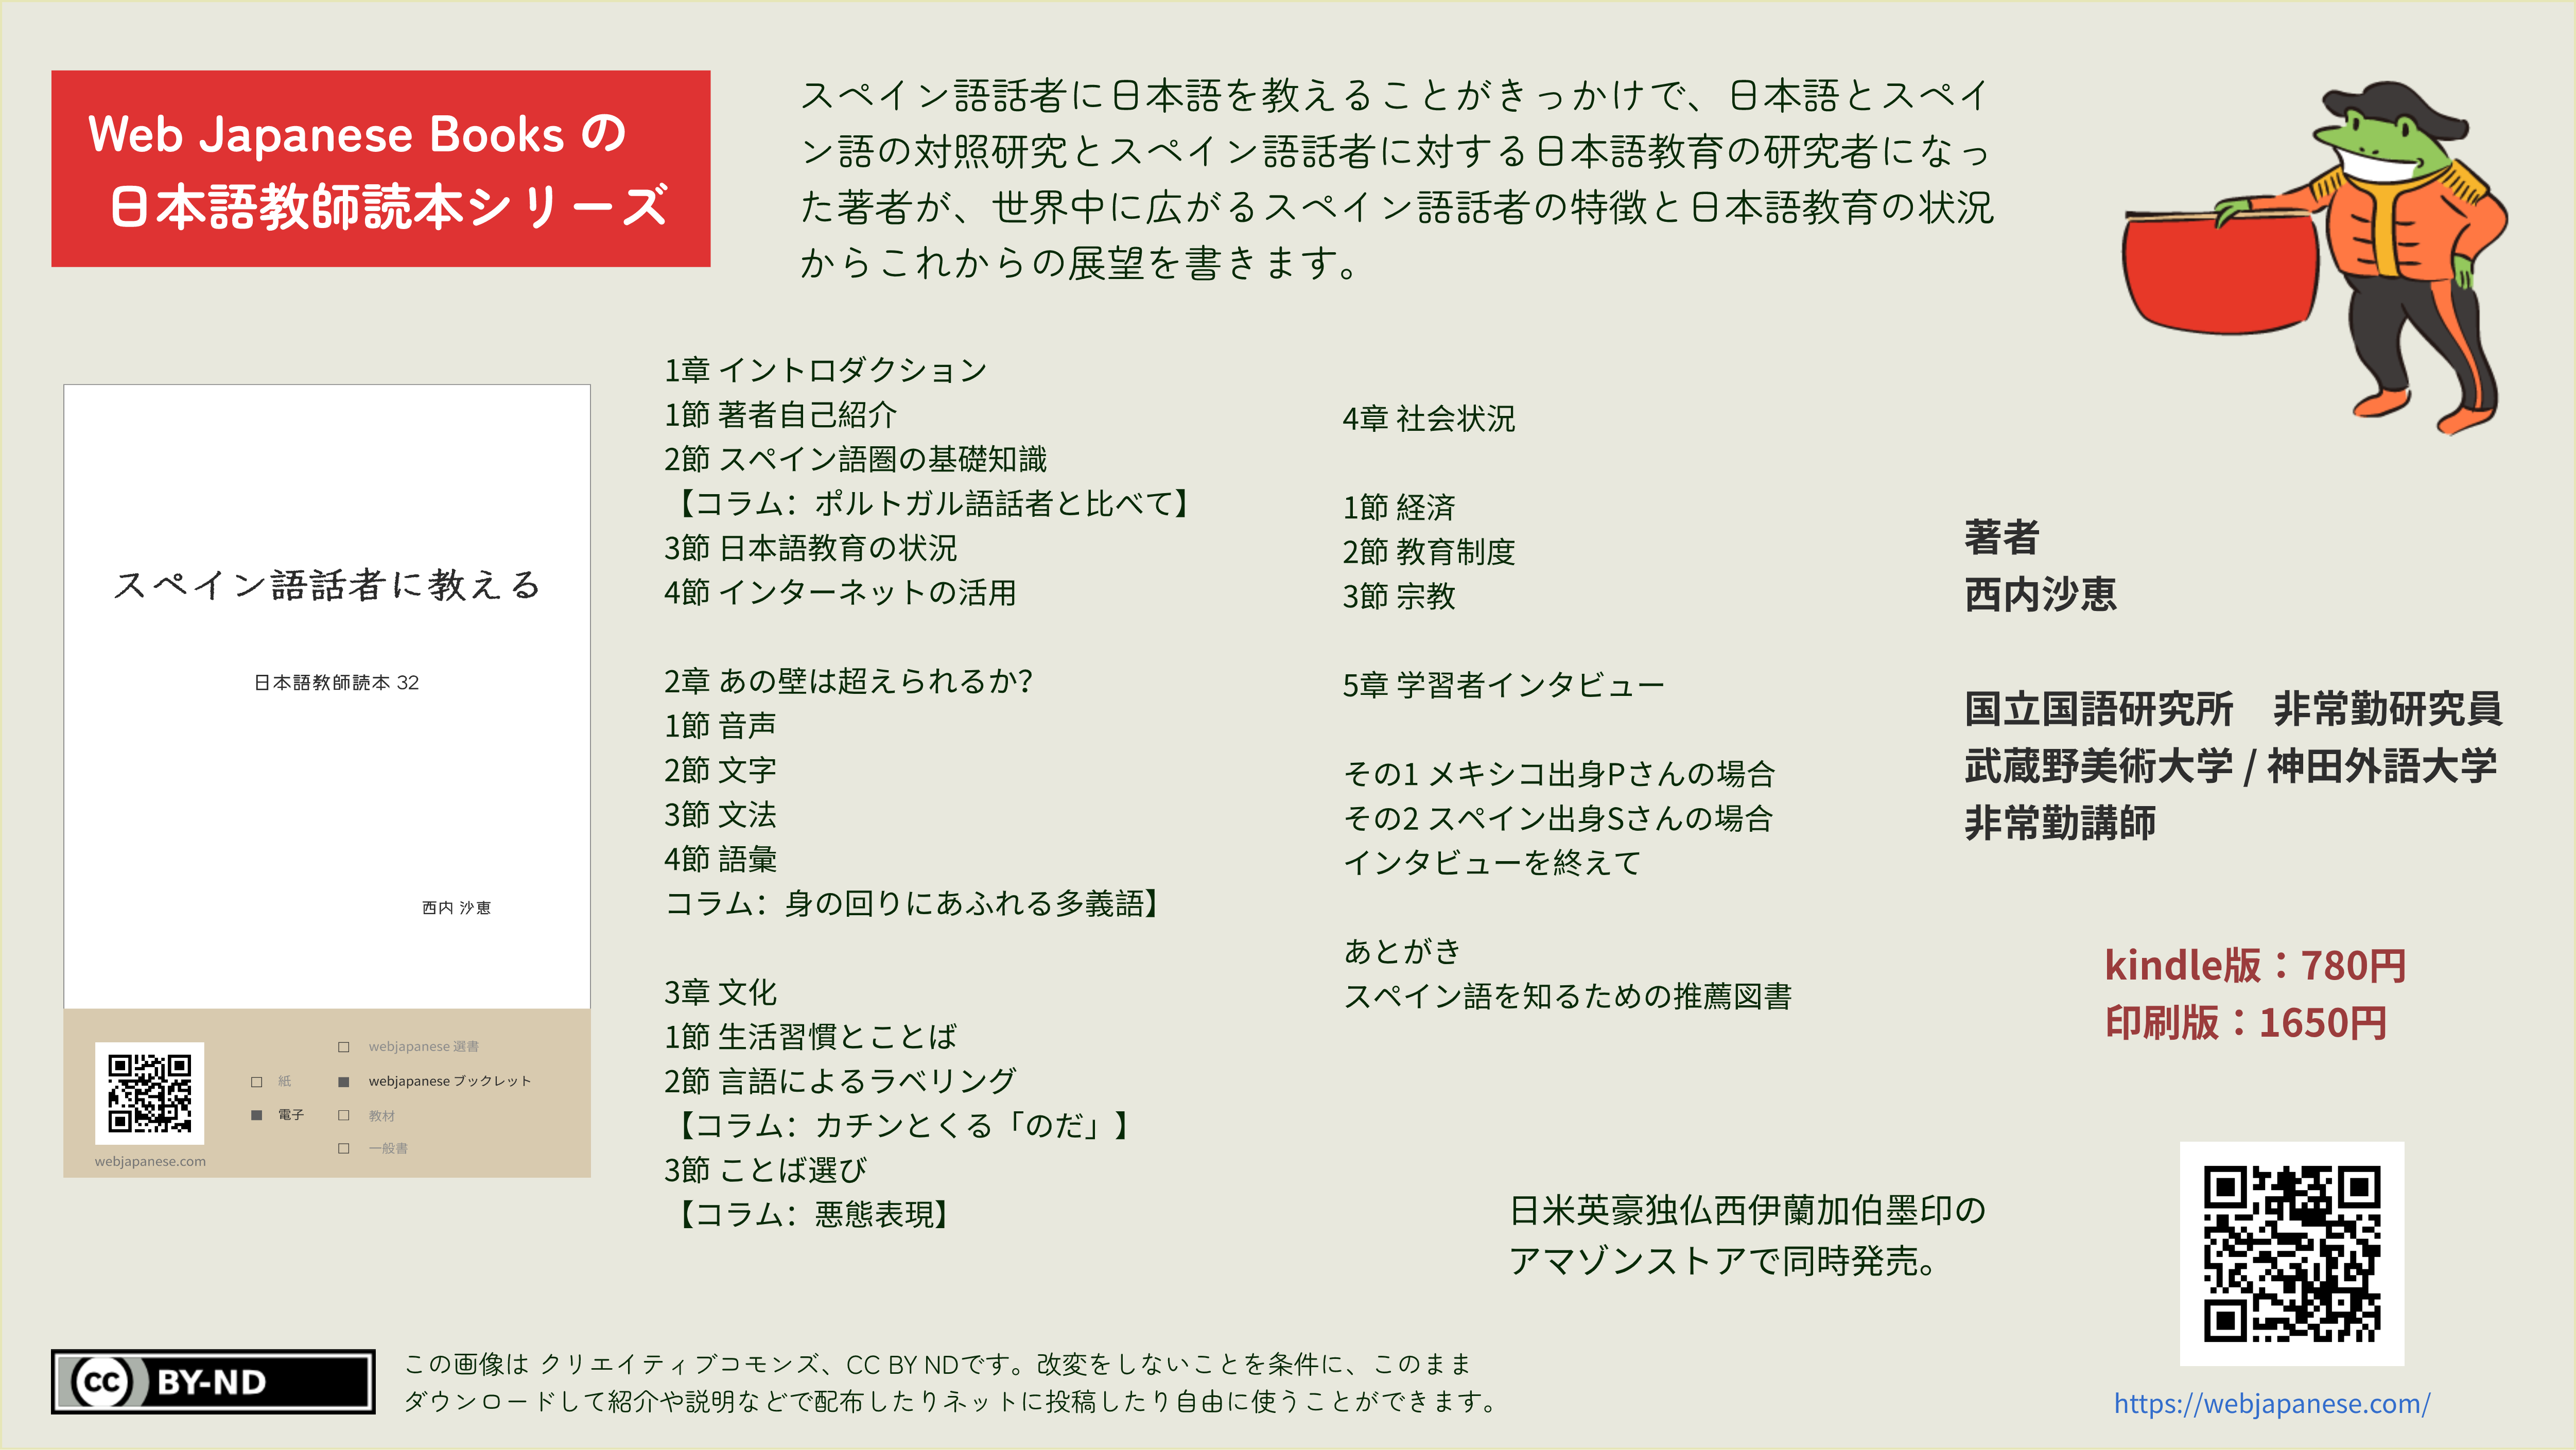 スペイン語話者に教える 日本語教師読本シリーズ 32 | WEB JAPANESE BOOKS